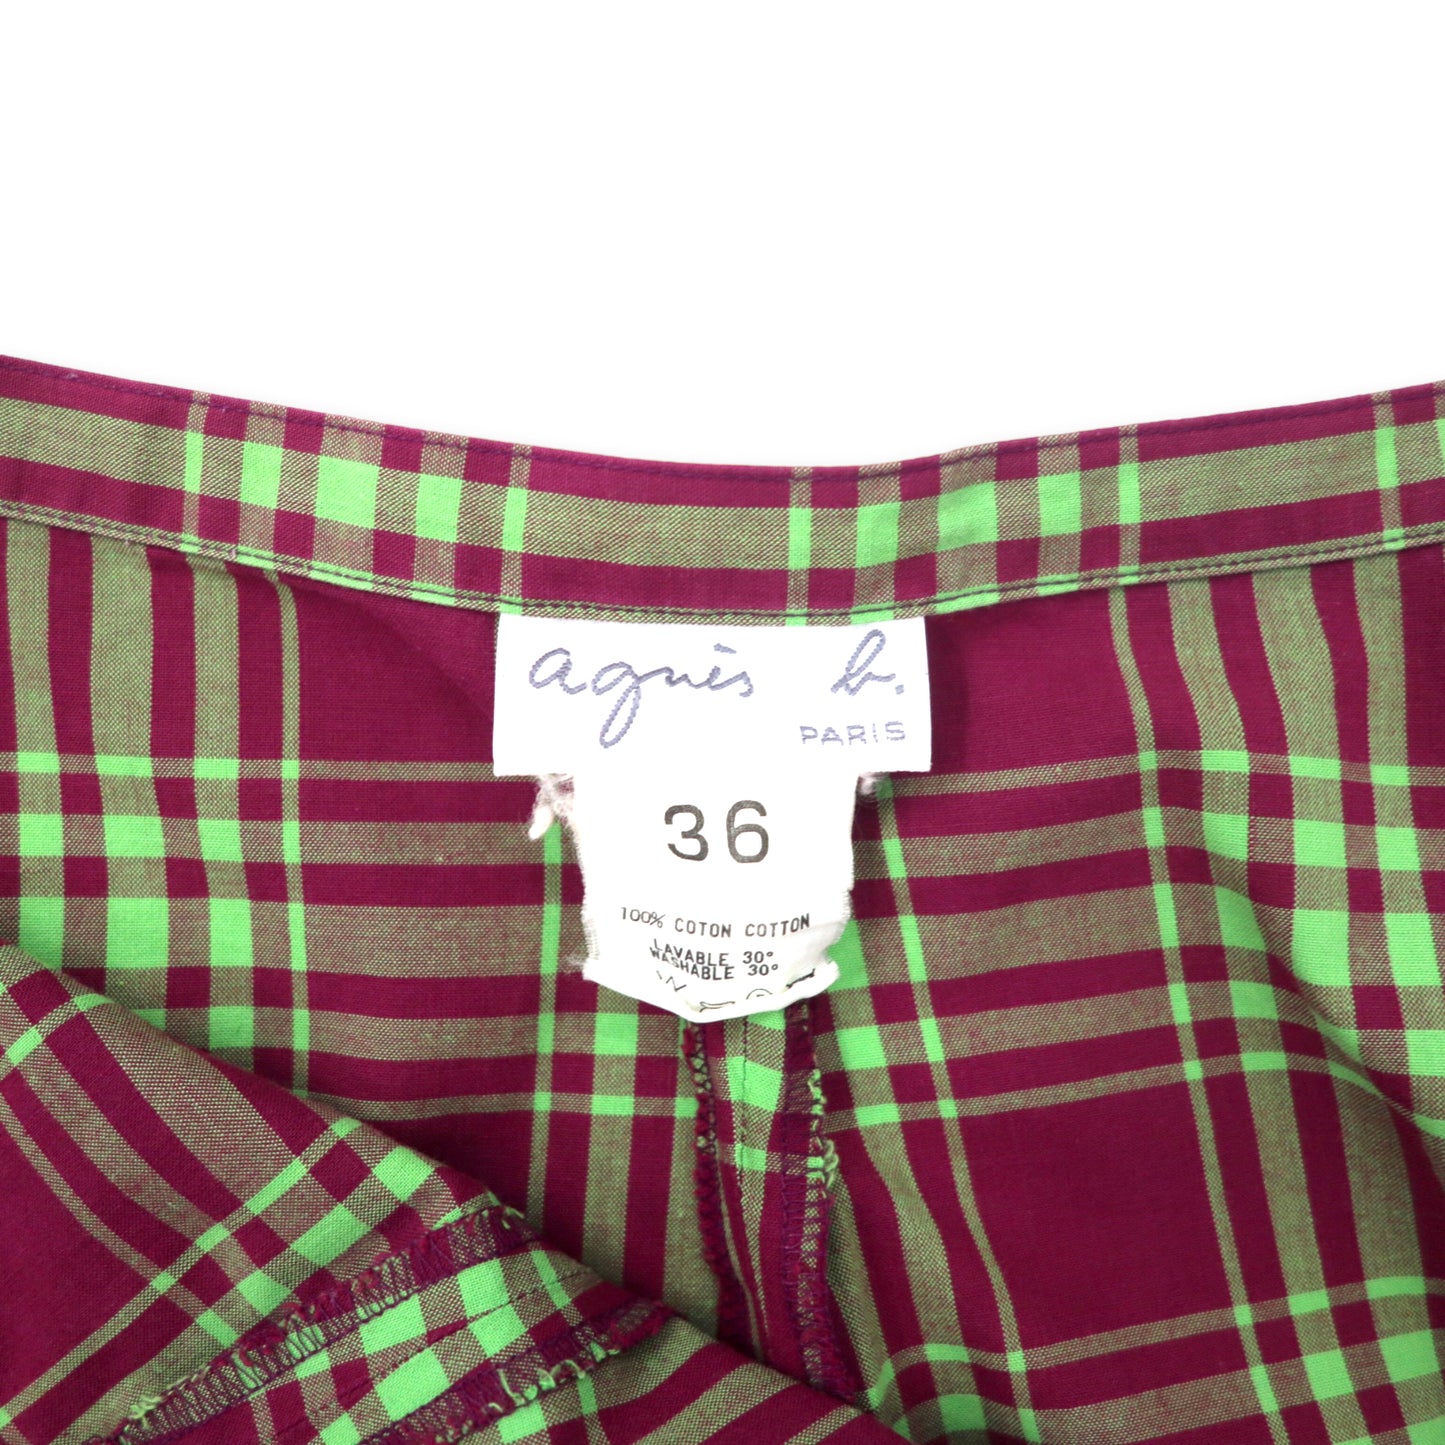 agnes b. Aライン ロングスカート 36 ピンク タータンチェック コットン 日本製